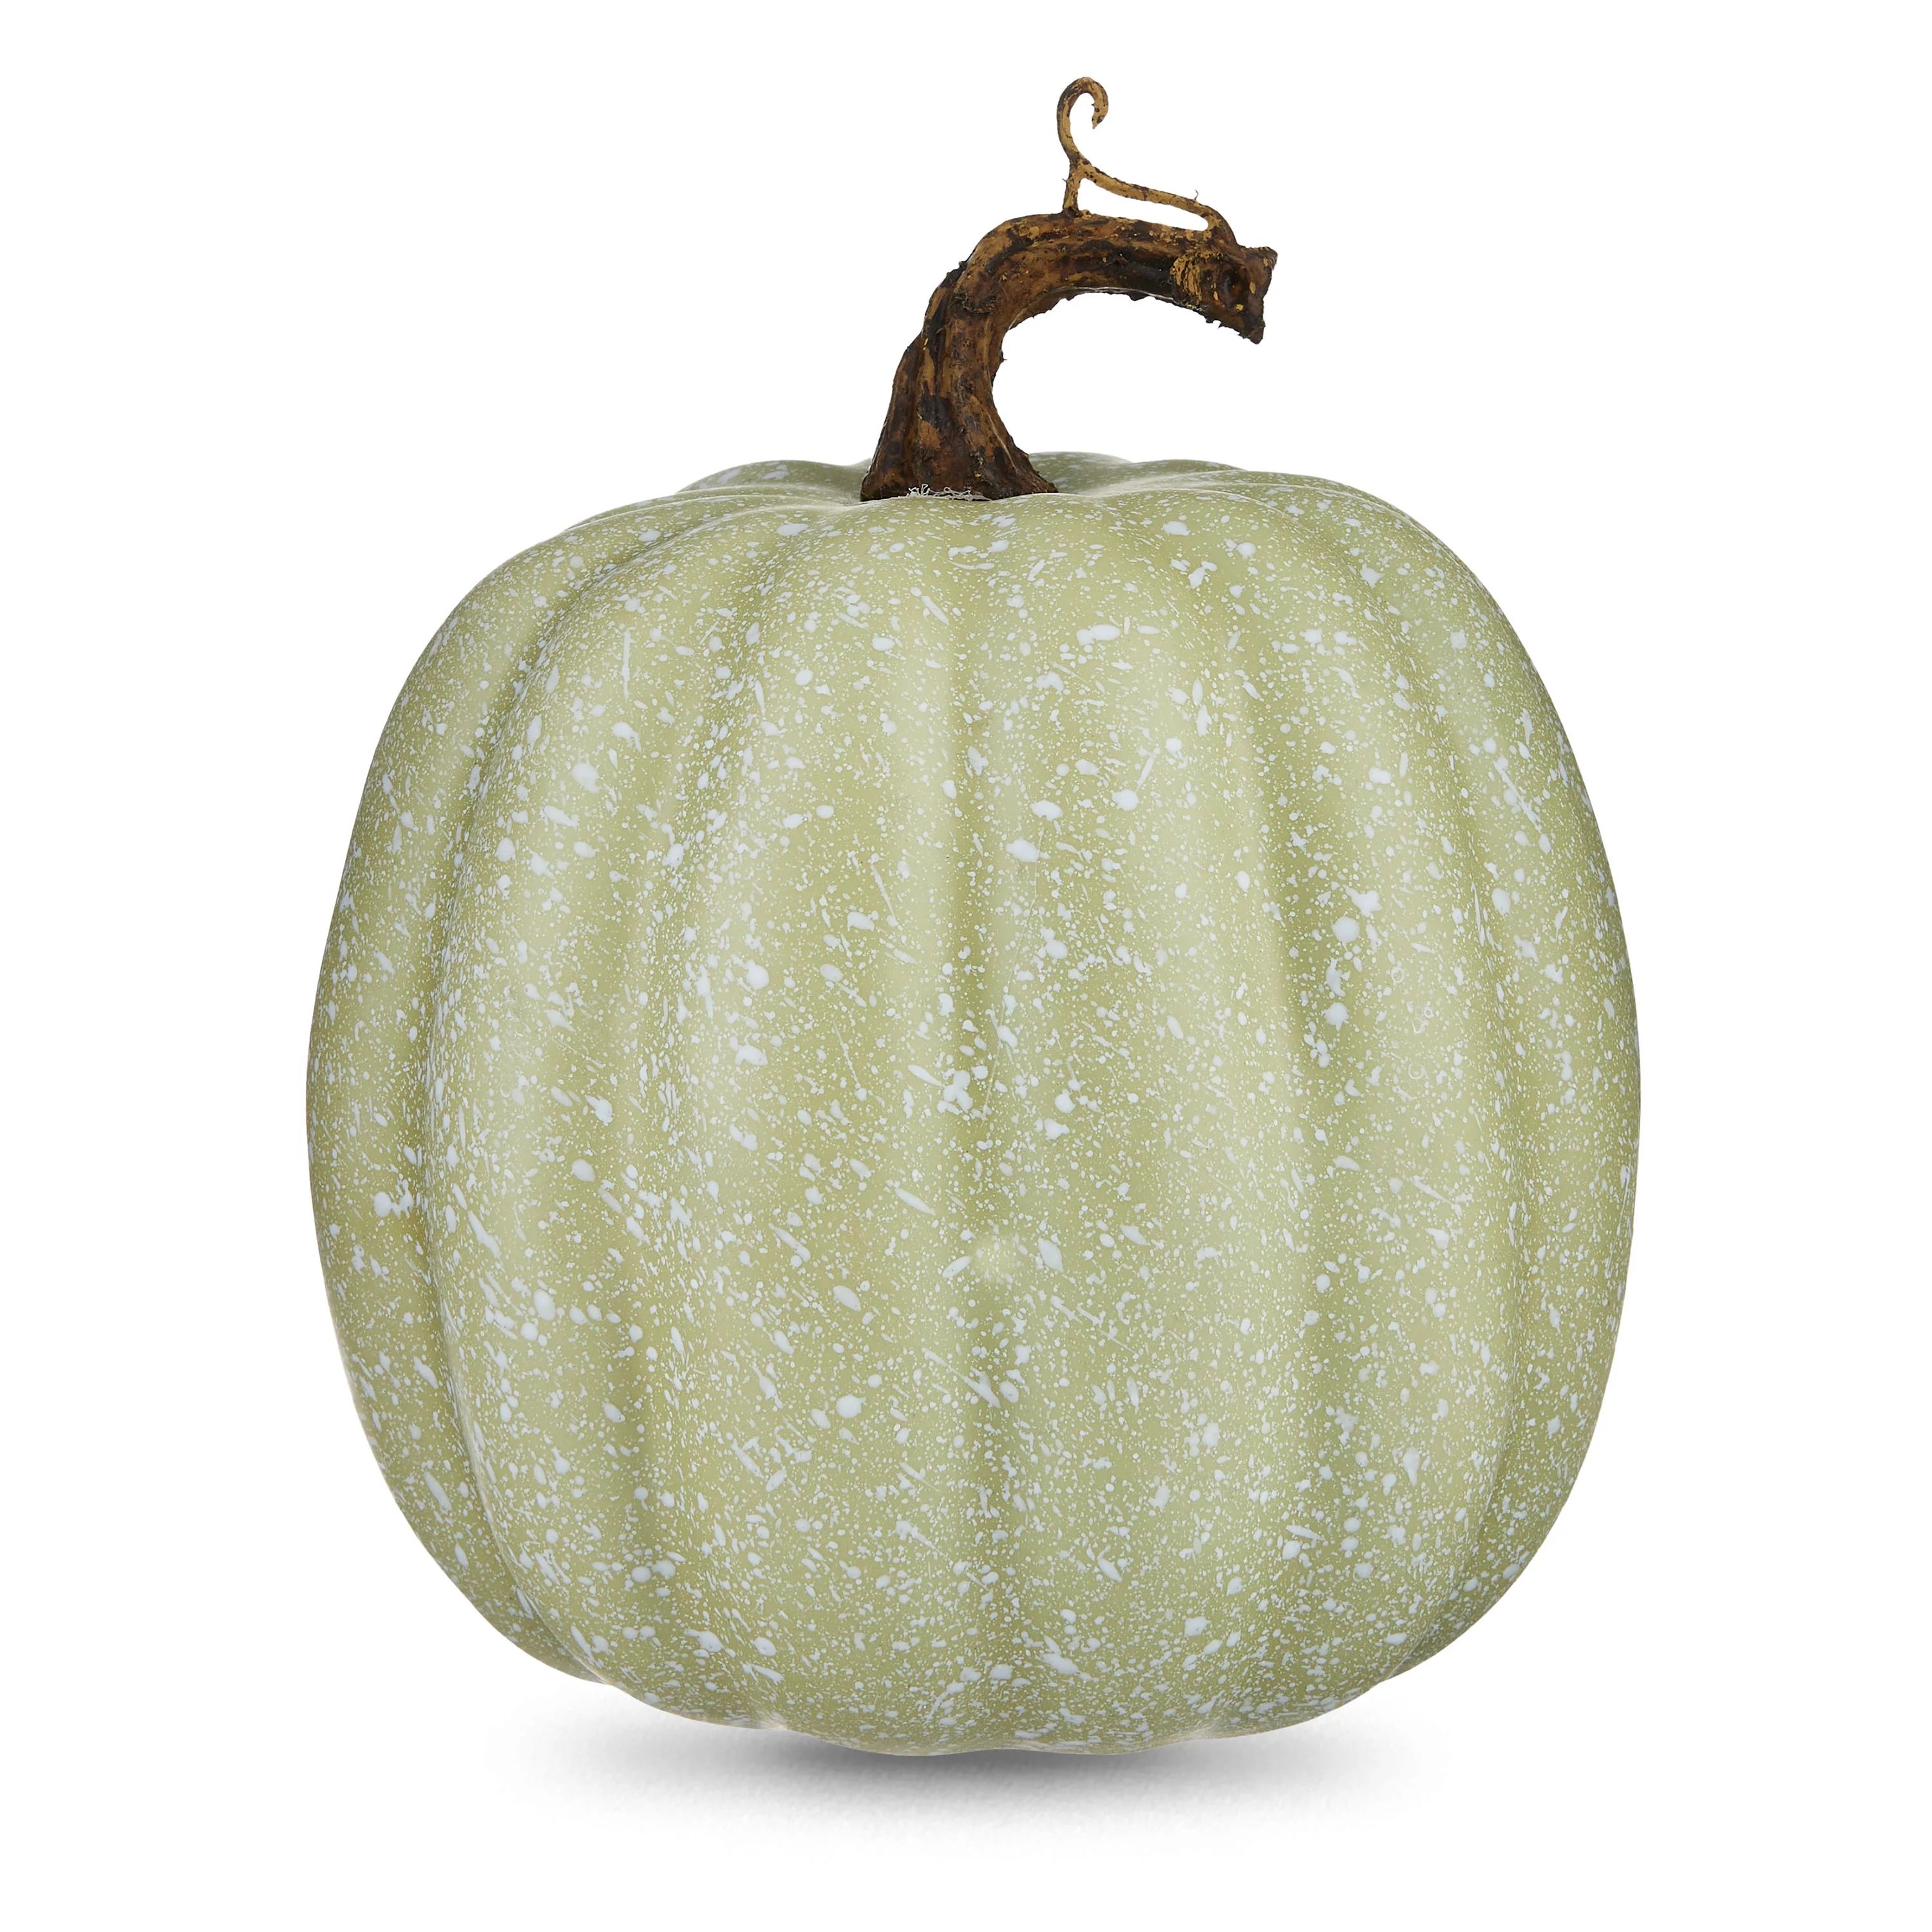 Harvest 6.5 in Small Splatter Tall Green Foam Pumpkin Decoration, Way to Celebrate | Walmart (US)